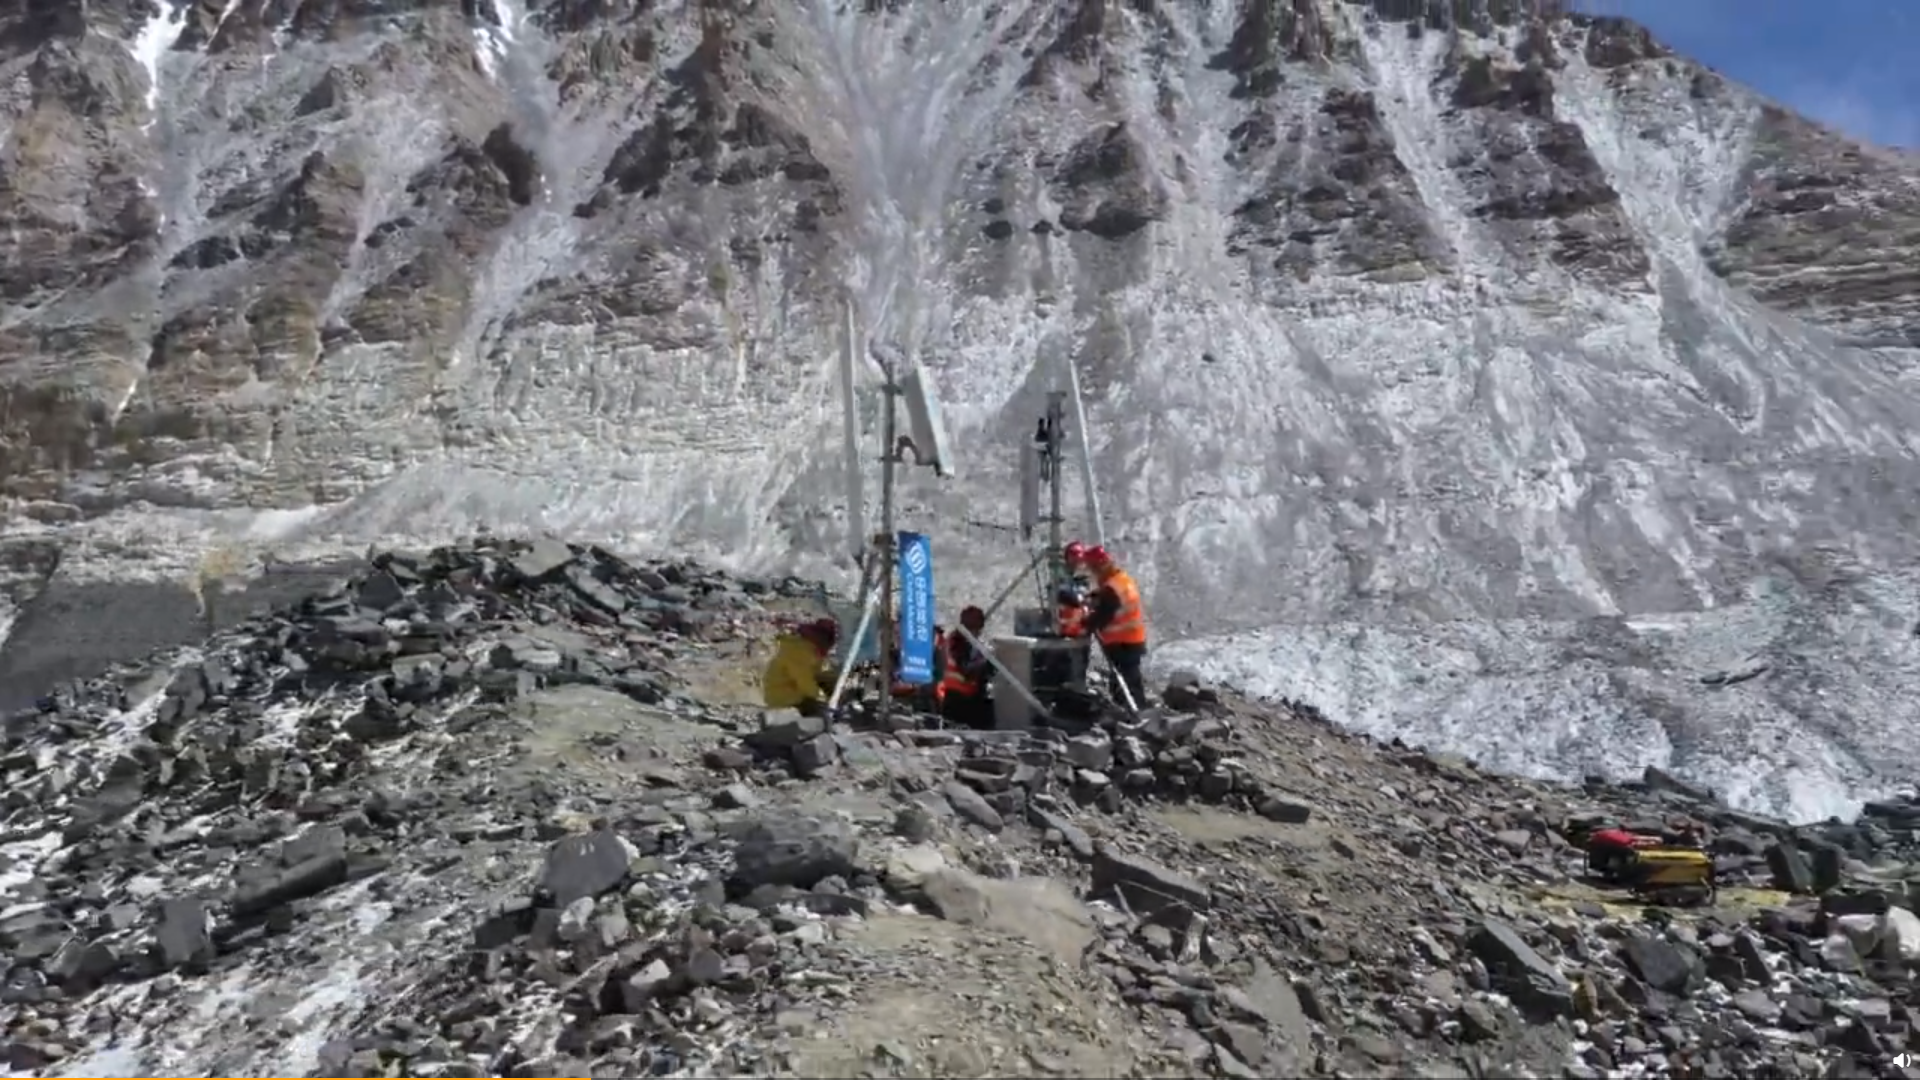 华为助力三大运营商在海拔5200米珠峰大本营、5800米过渡营已经完成5G基站开通工作，预计在4月25日前完成6500米前进营5G基站的建设开通工作。